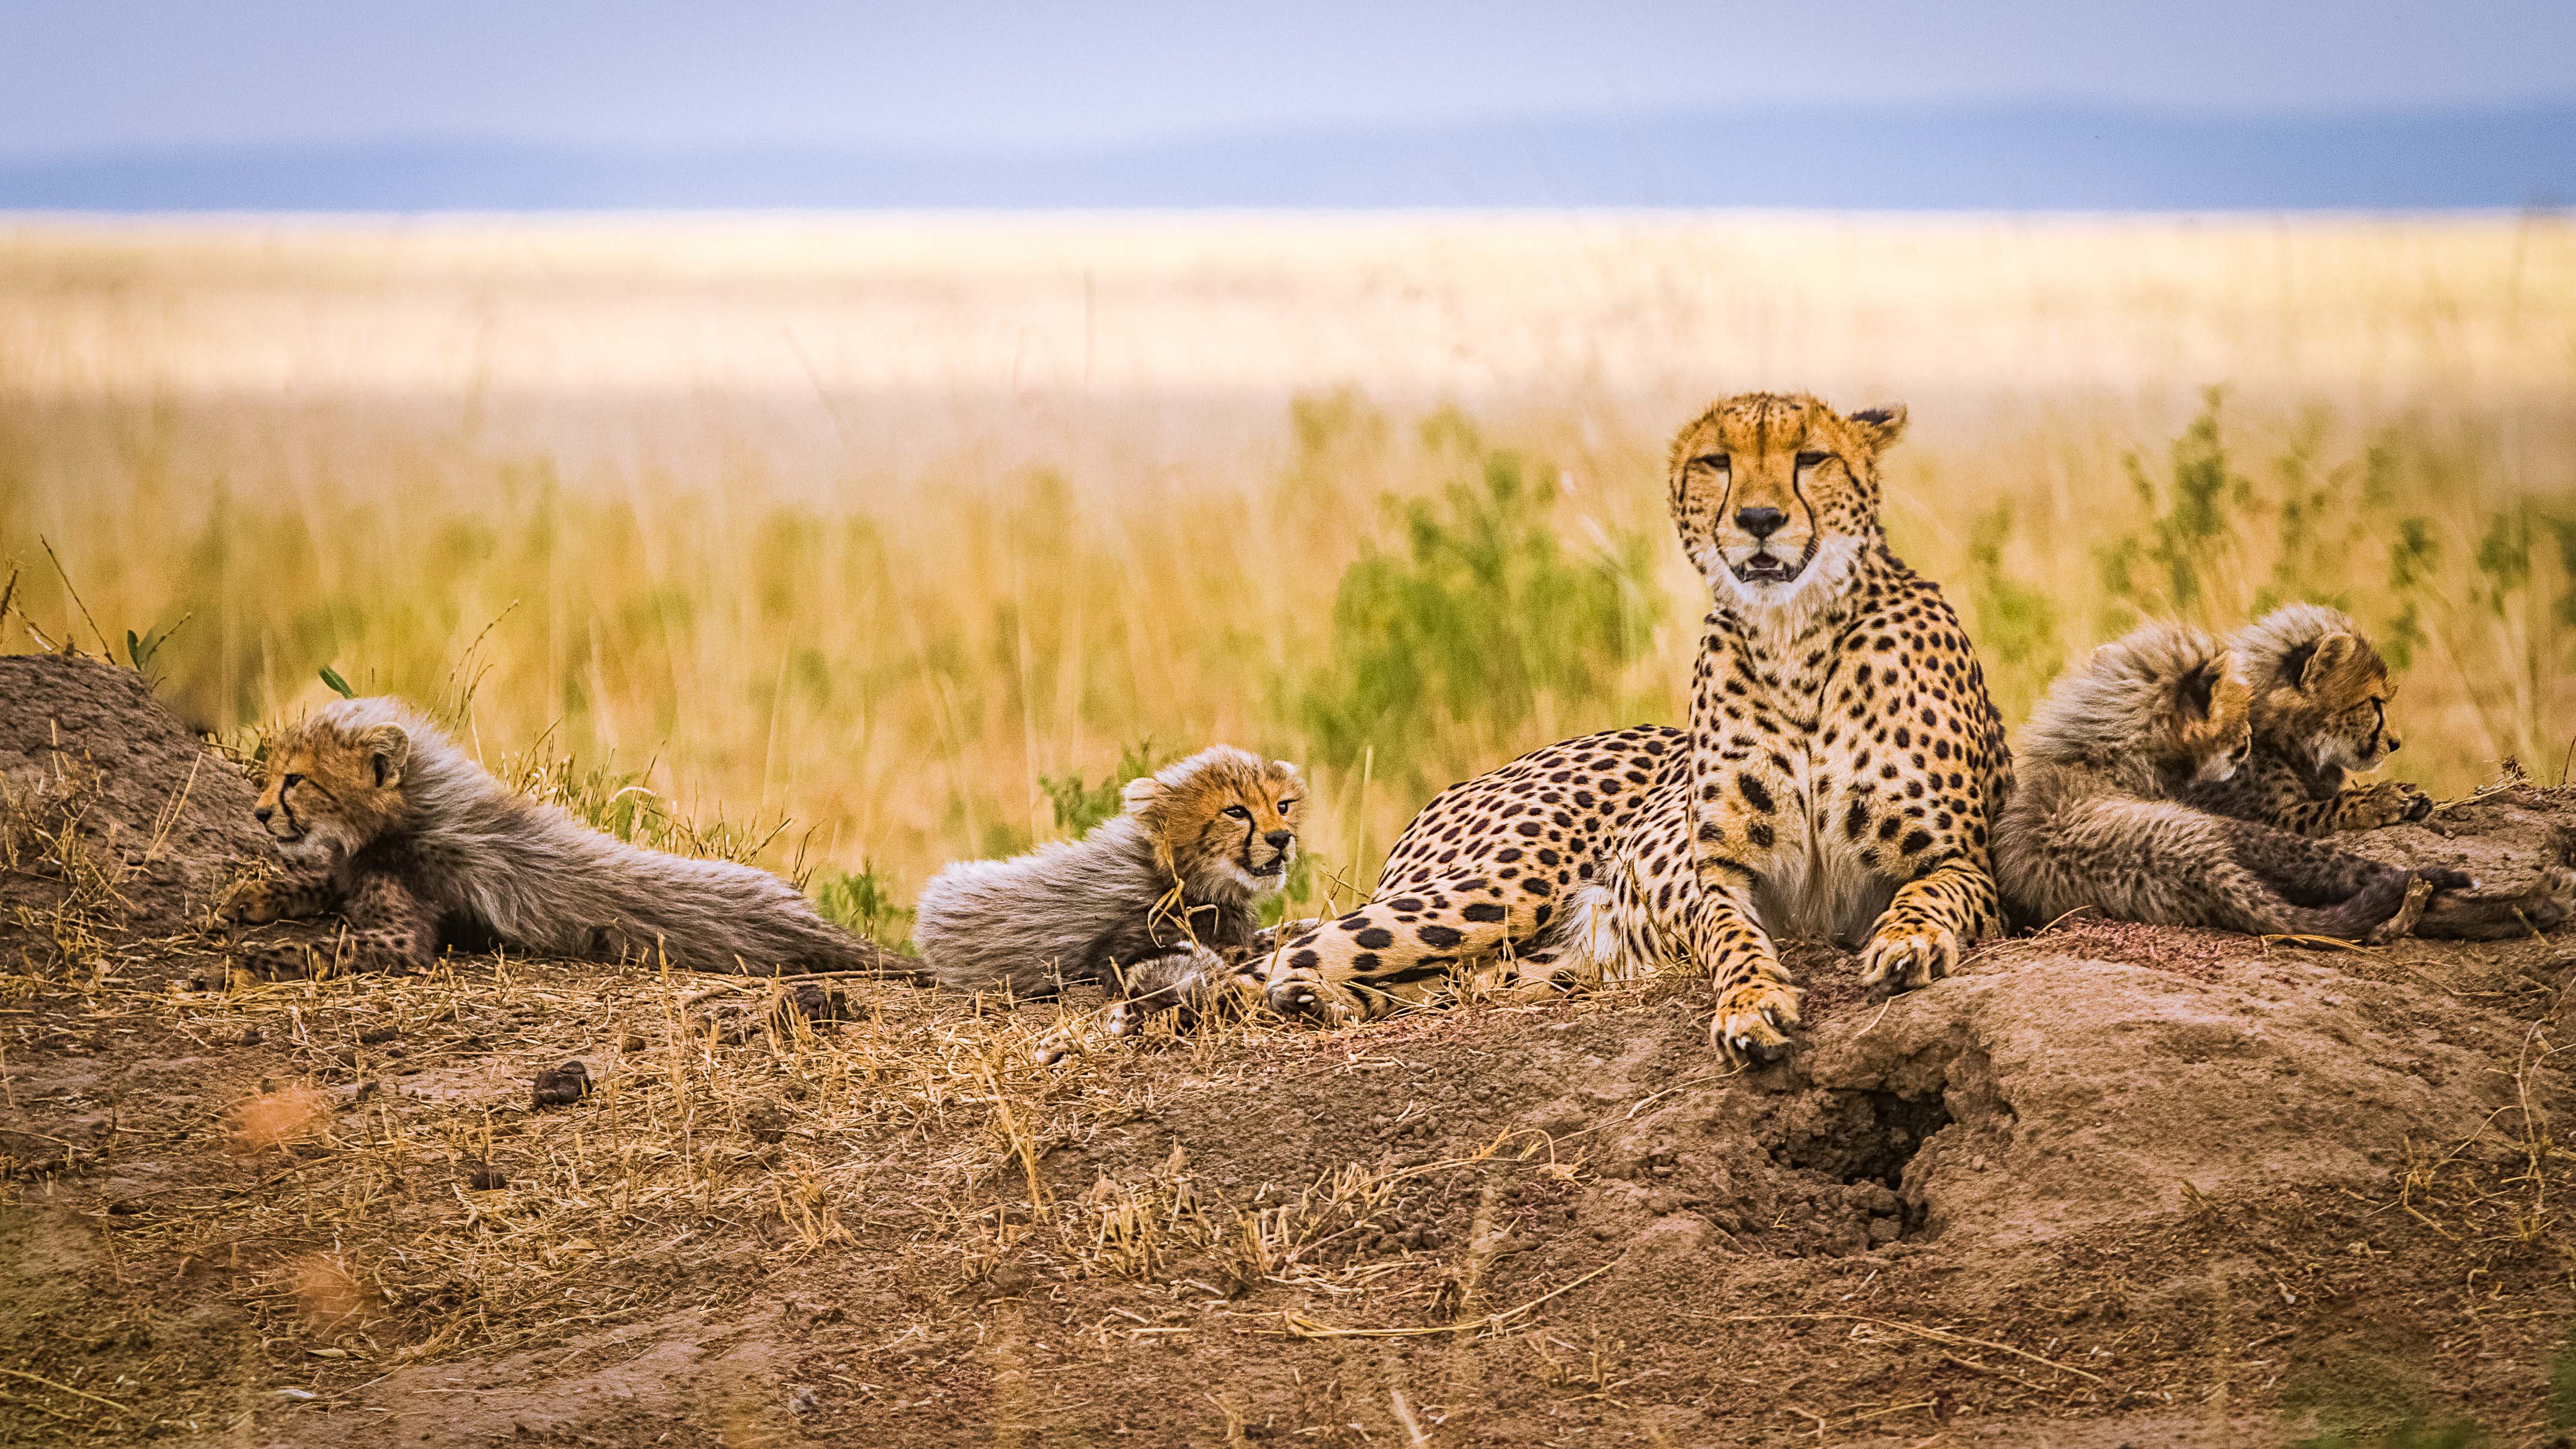 深度摄影之走进动物世界的狂野之都肯尼亚